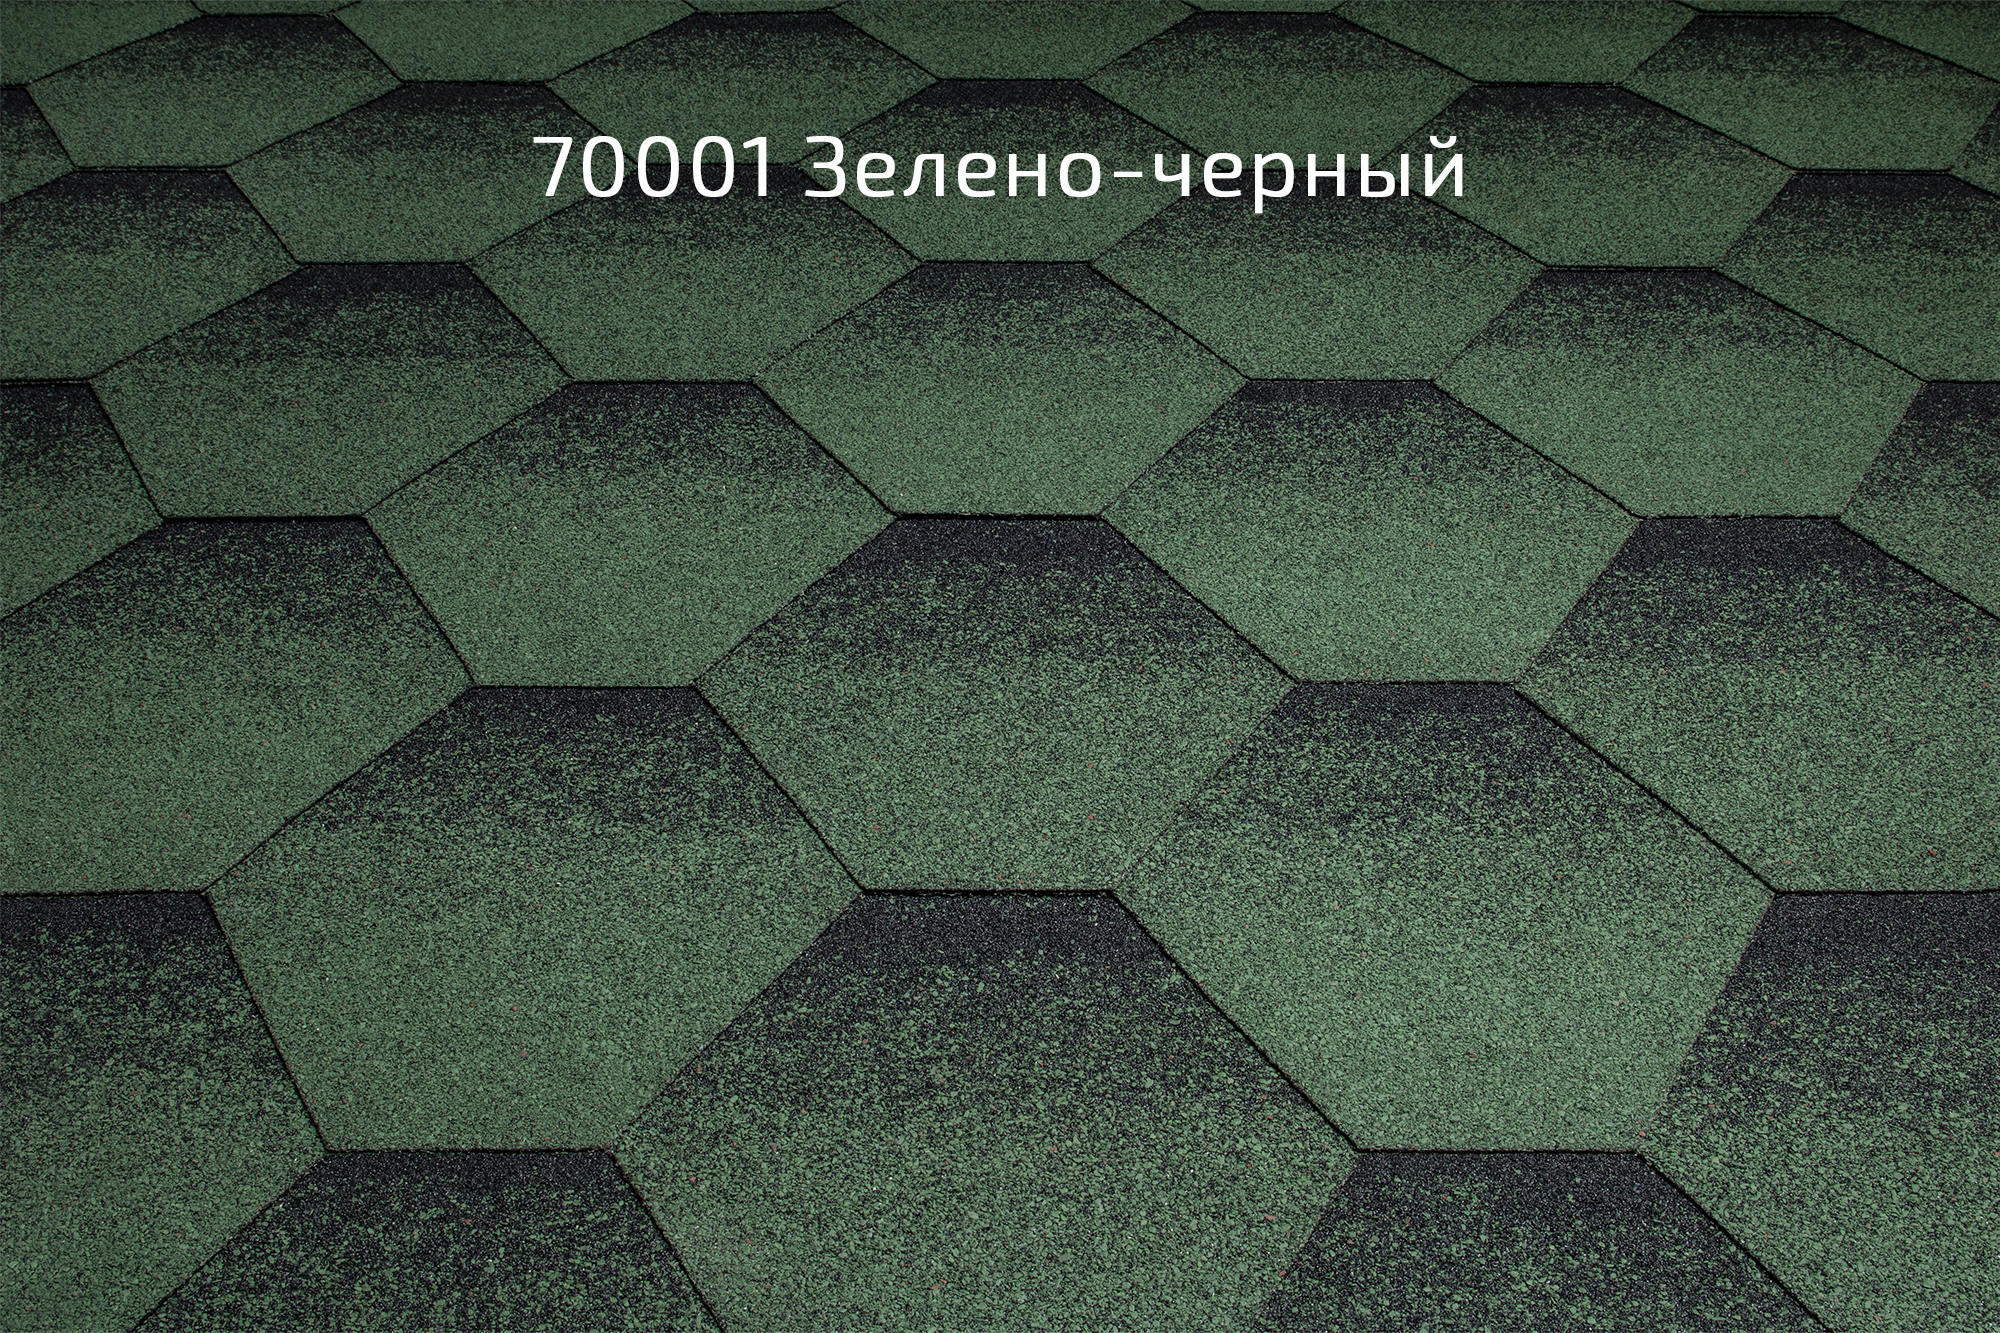 Битумная черепица Kerabit K+ «Тройка» 70001 Зелено-черный